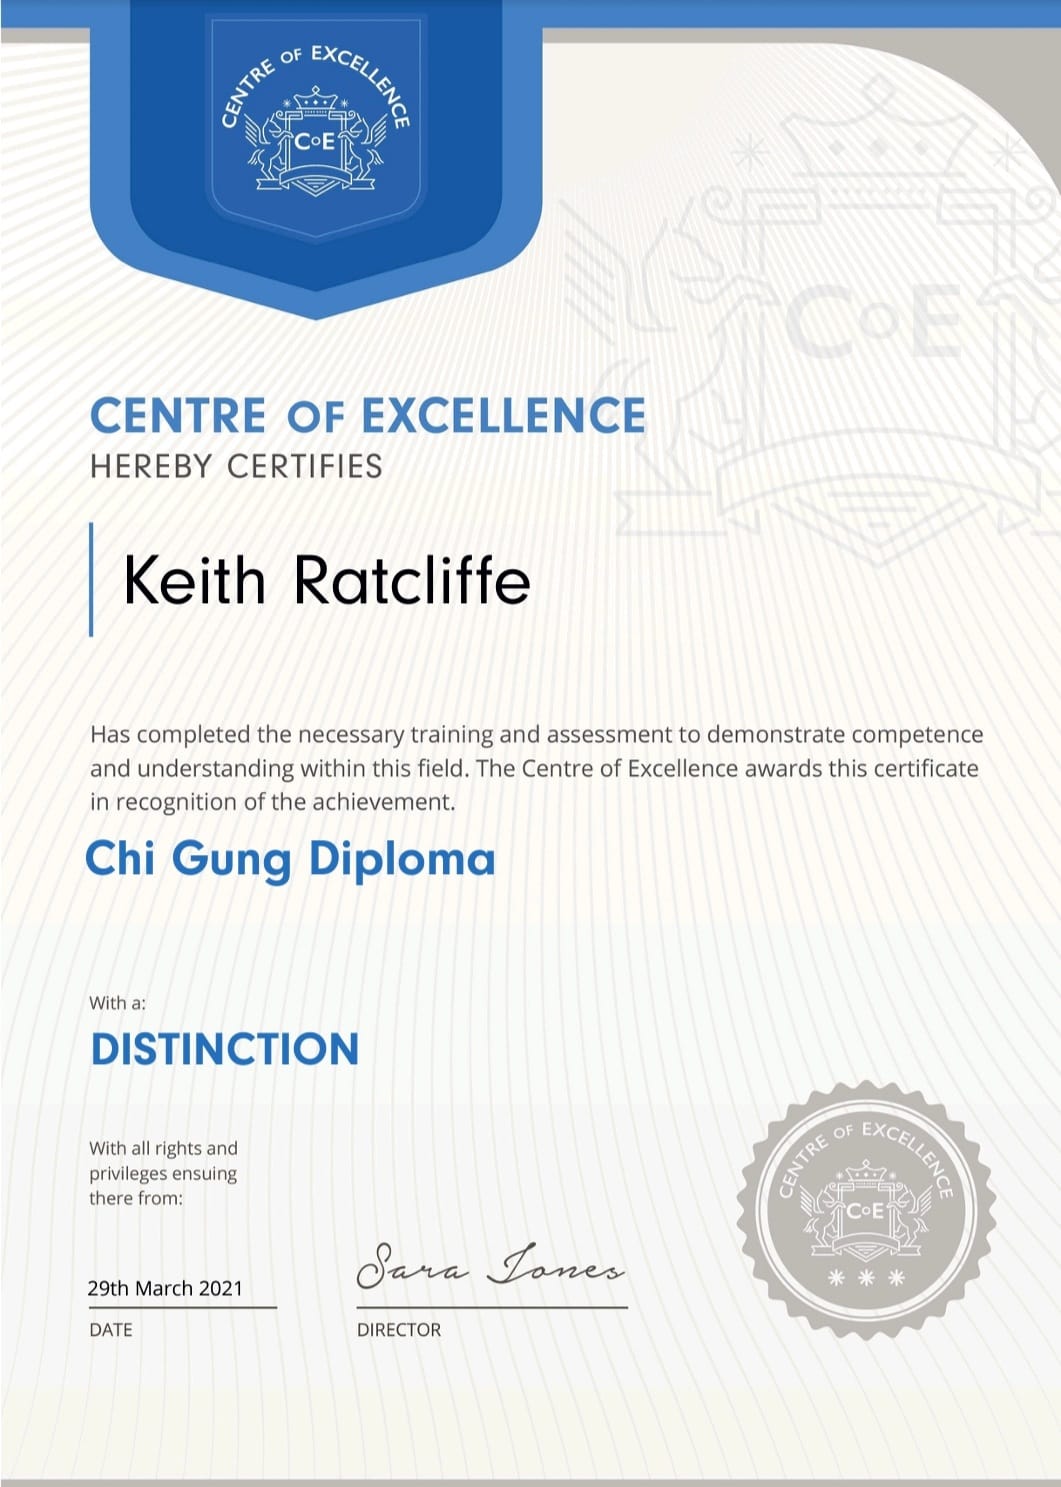 Chi Gung Diploma Certificate